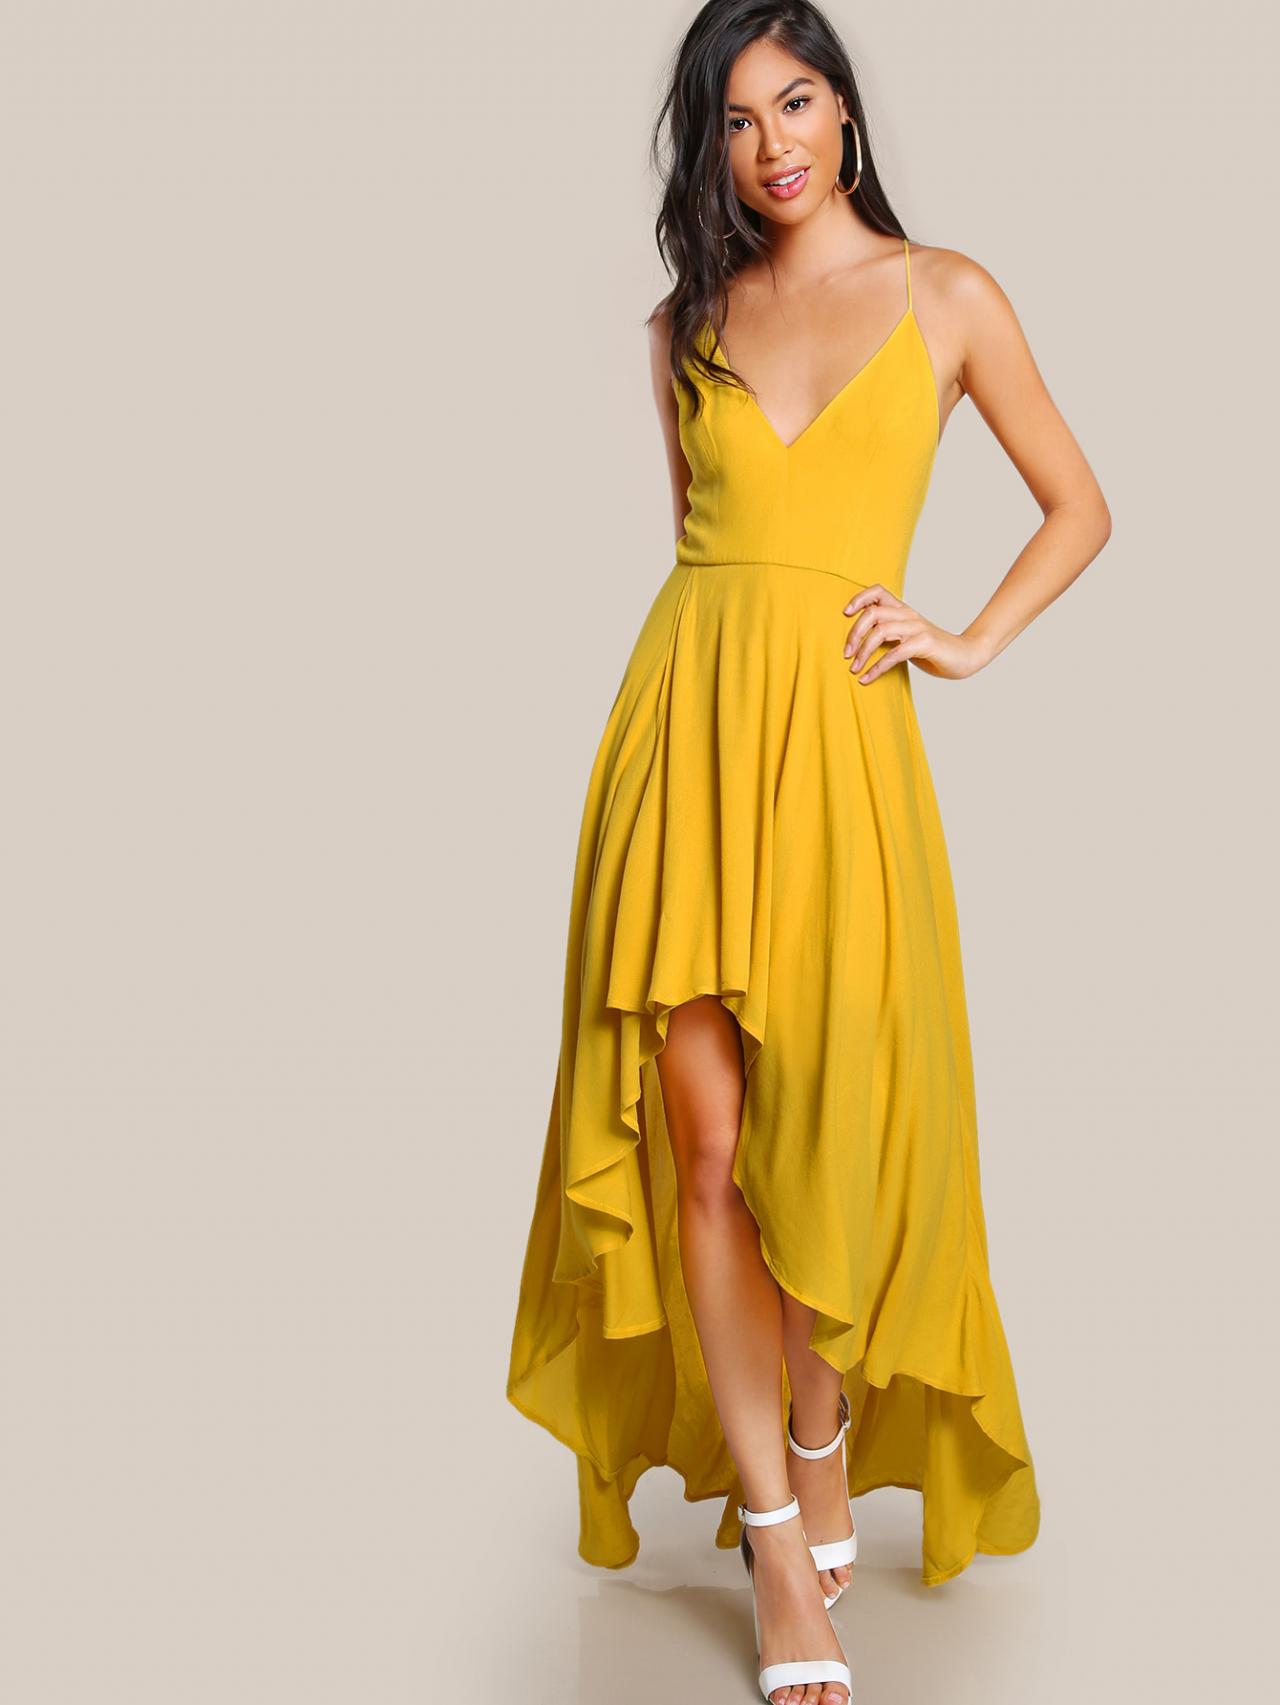 Backless High Low Cami Dress Yellow Long Chiffon Prom Dress on Luulla